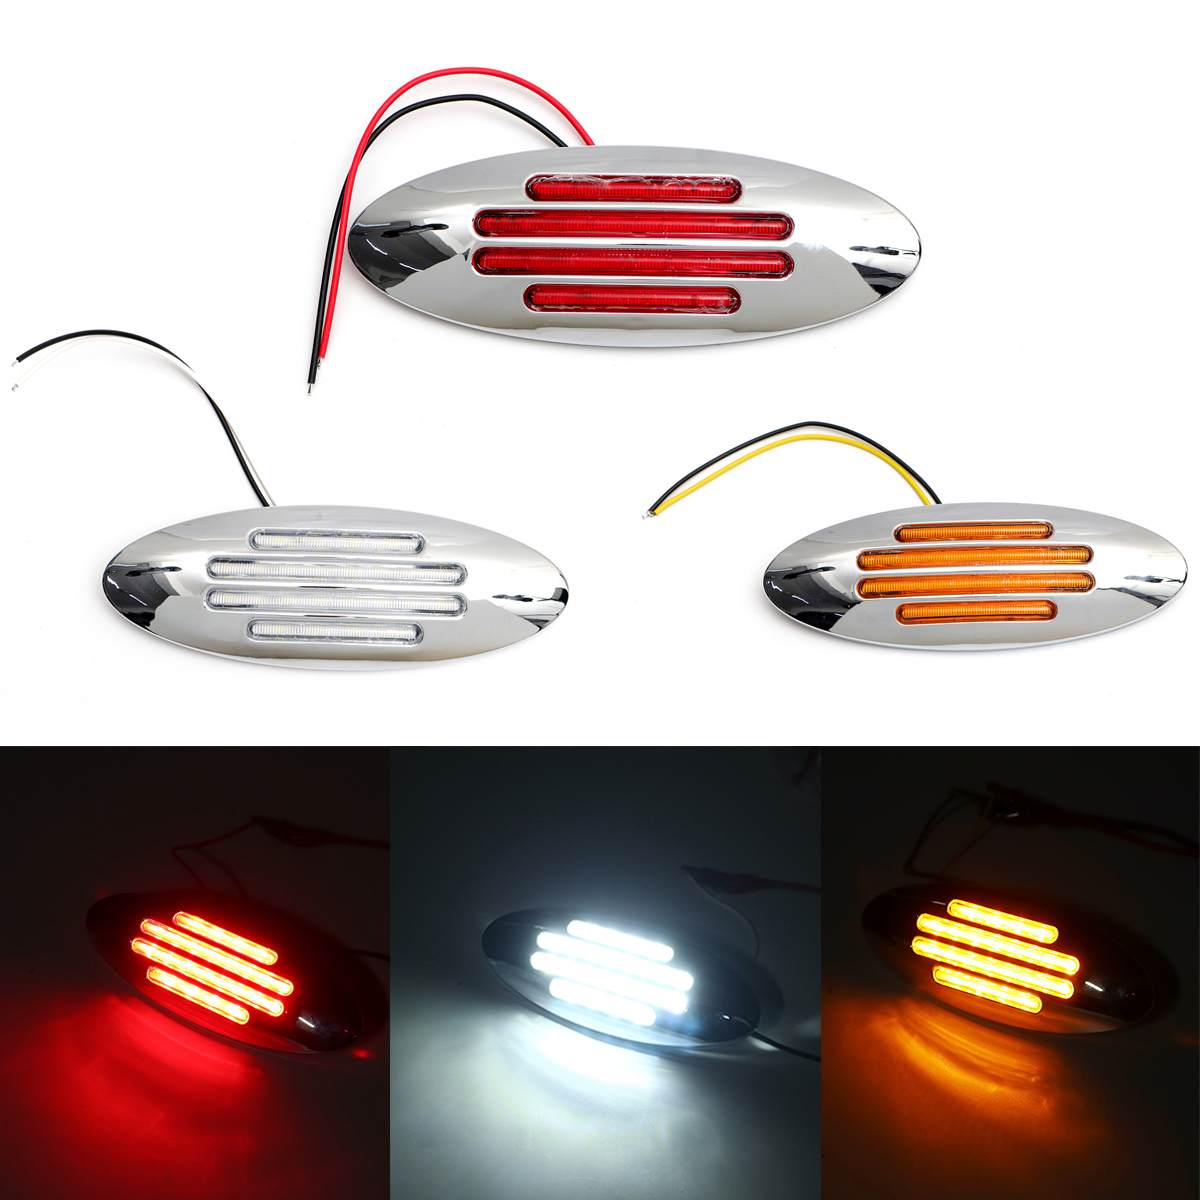 

12V LED Авто Грузовой прицеп Прицеп боковой габаритный фонарь Красный / Янтарный / Белый Универсальный